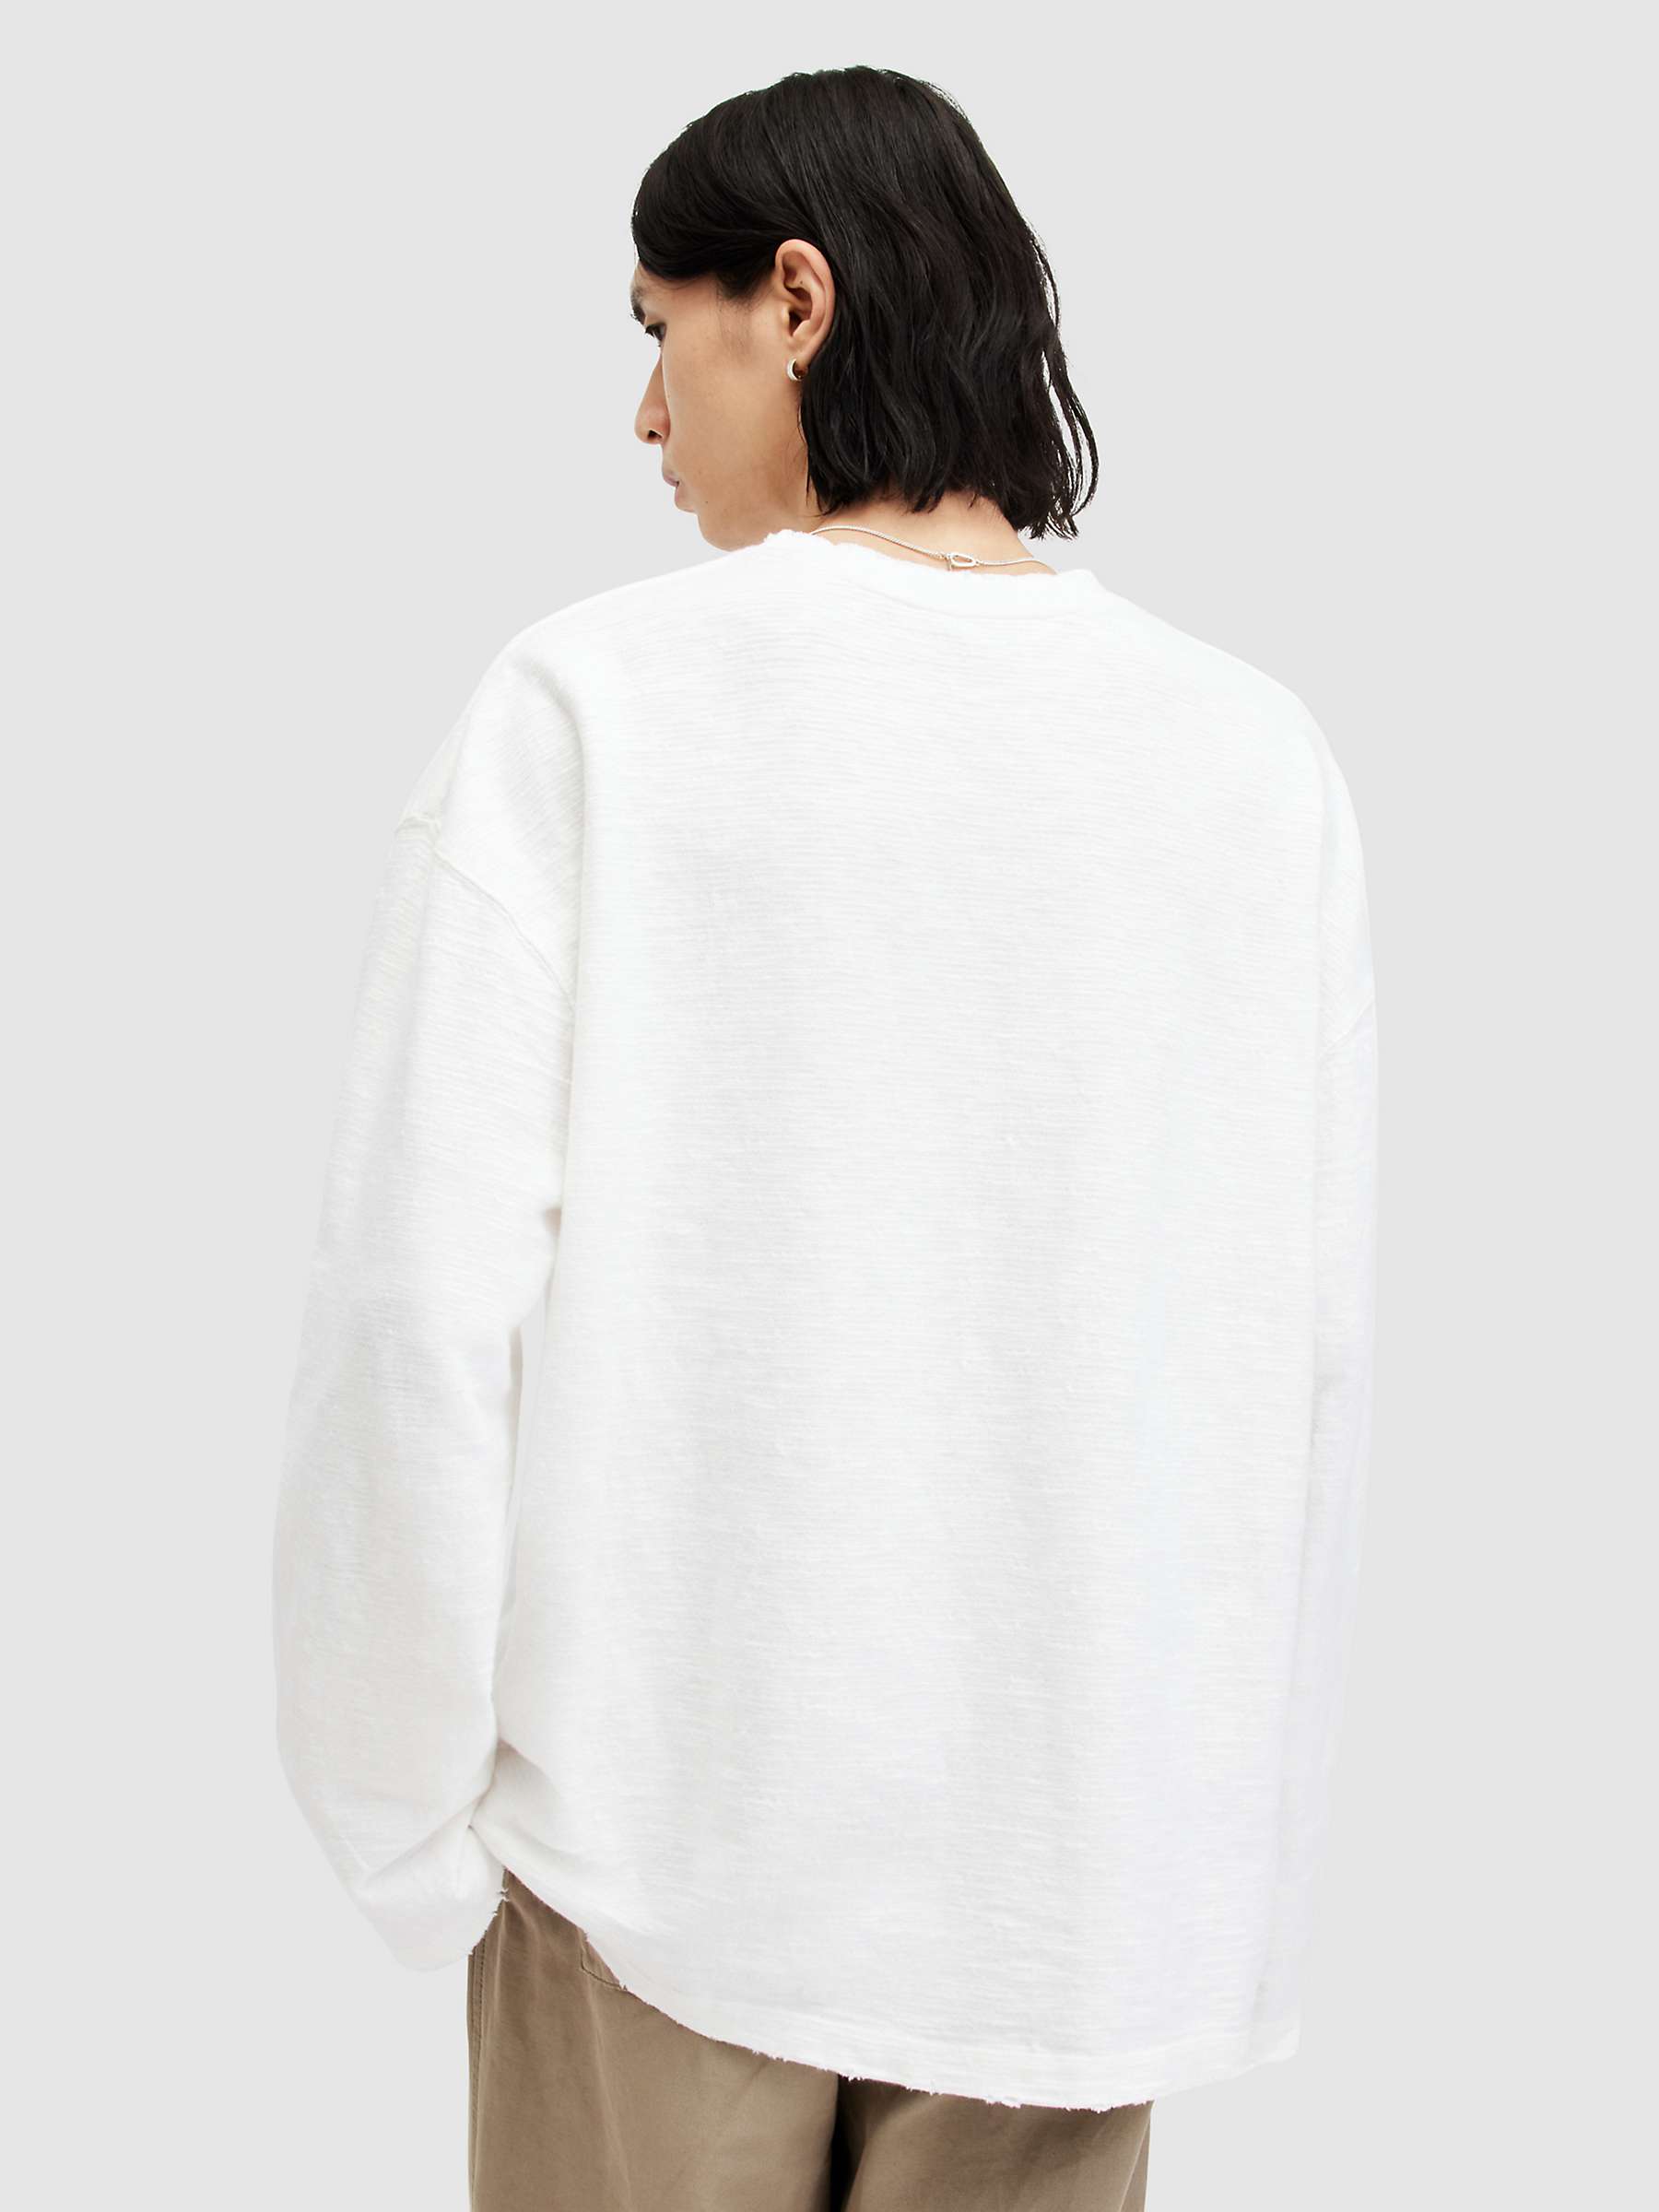 Buy AllSaints Aspen Oversized Raw Edge Long Sleeve T-shirt, Lilly White Online at johnlewis.com